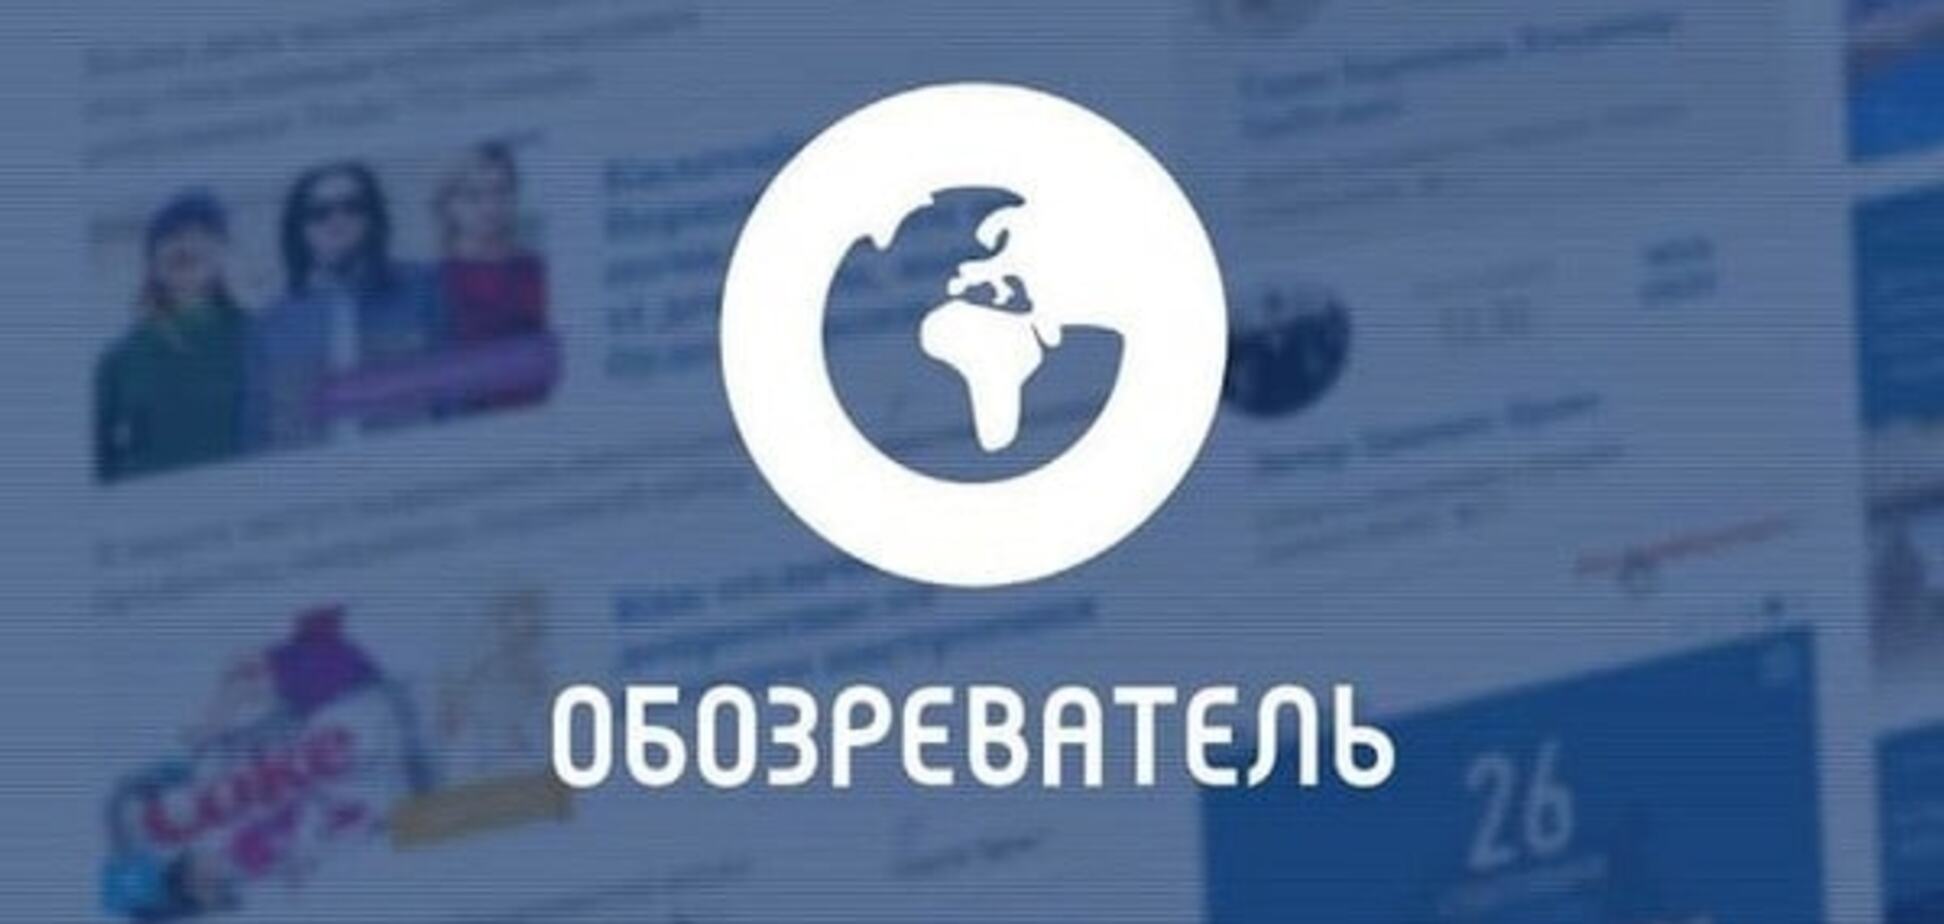 Тарута: Наслідки блокади Донбасі катастрофічні